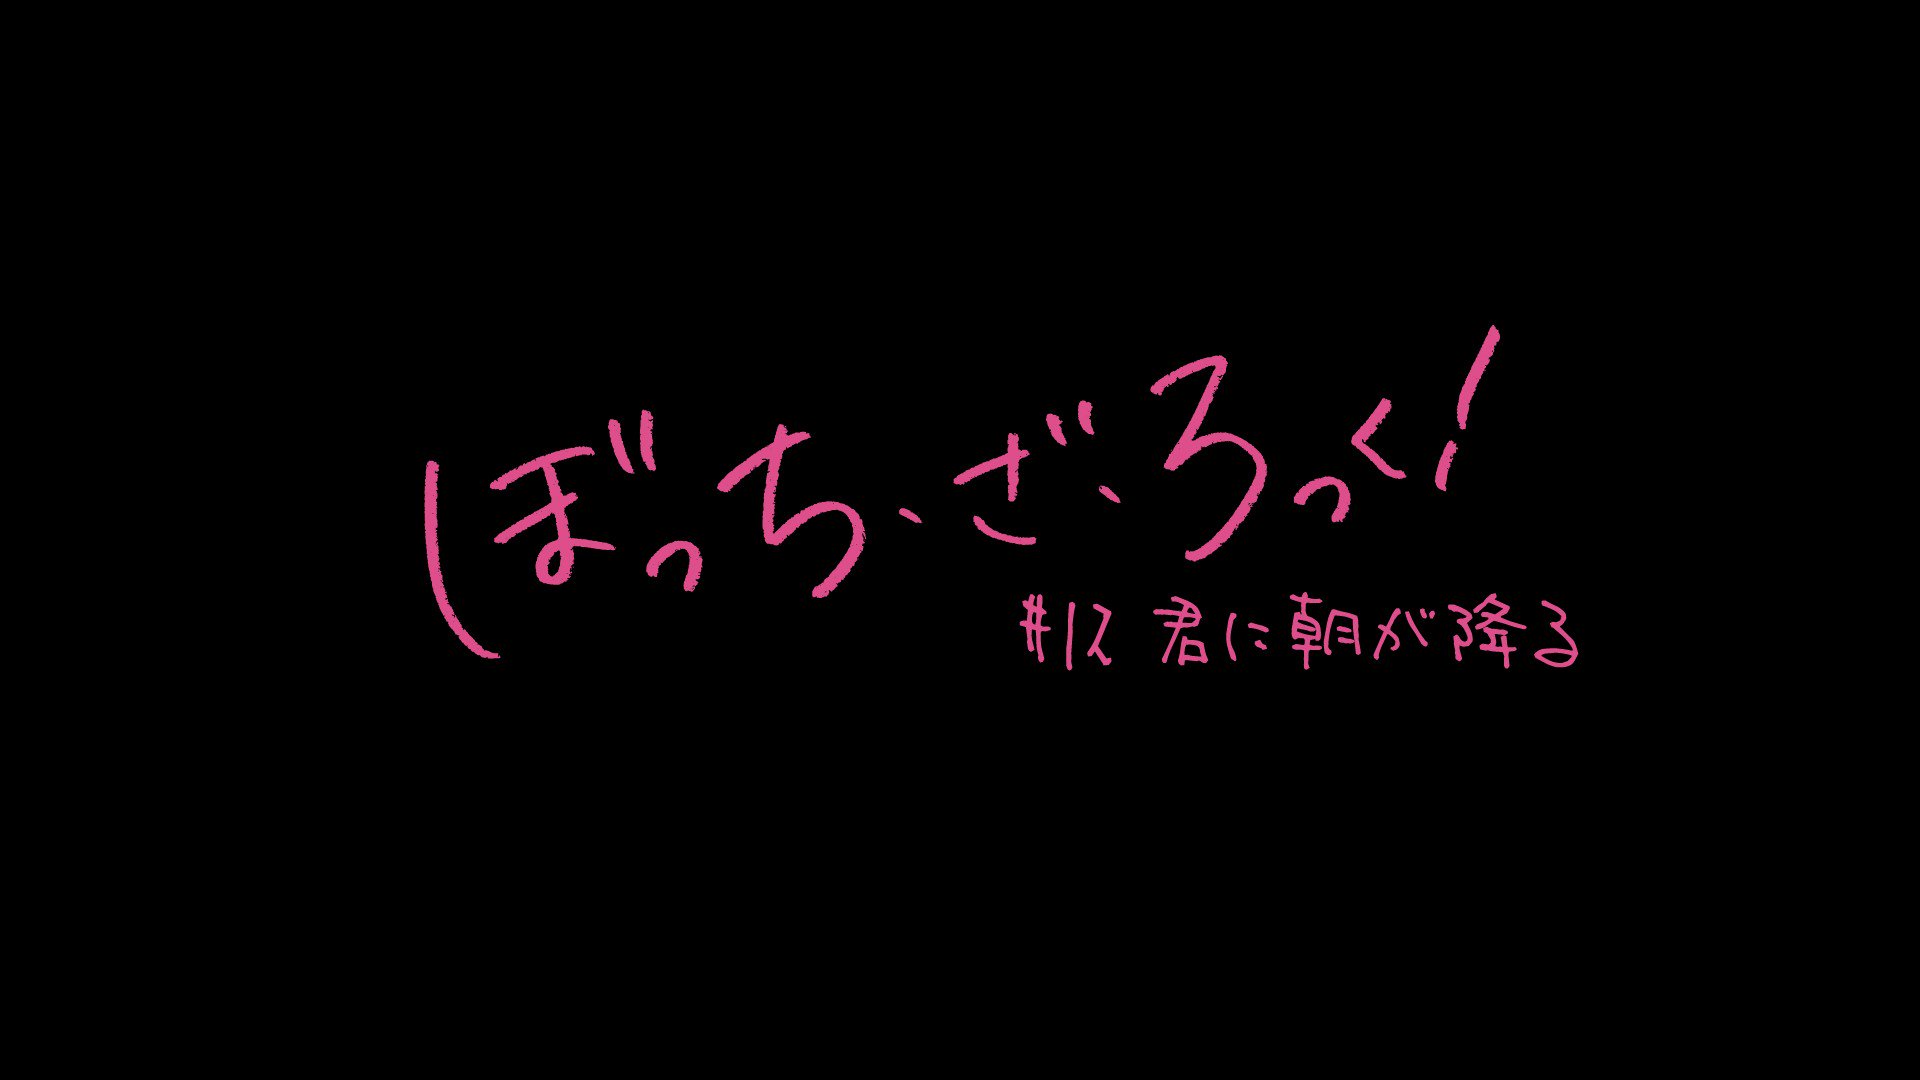 Anime  Bocchi the Rock! anunciará novidades imperdíveis em outubro 